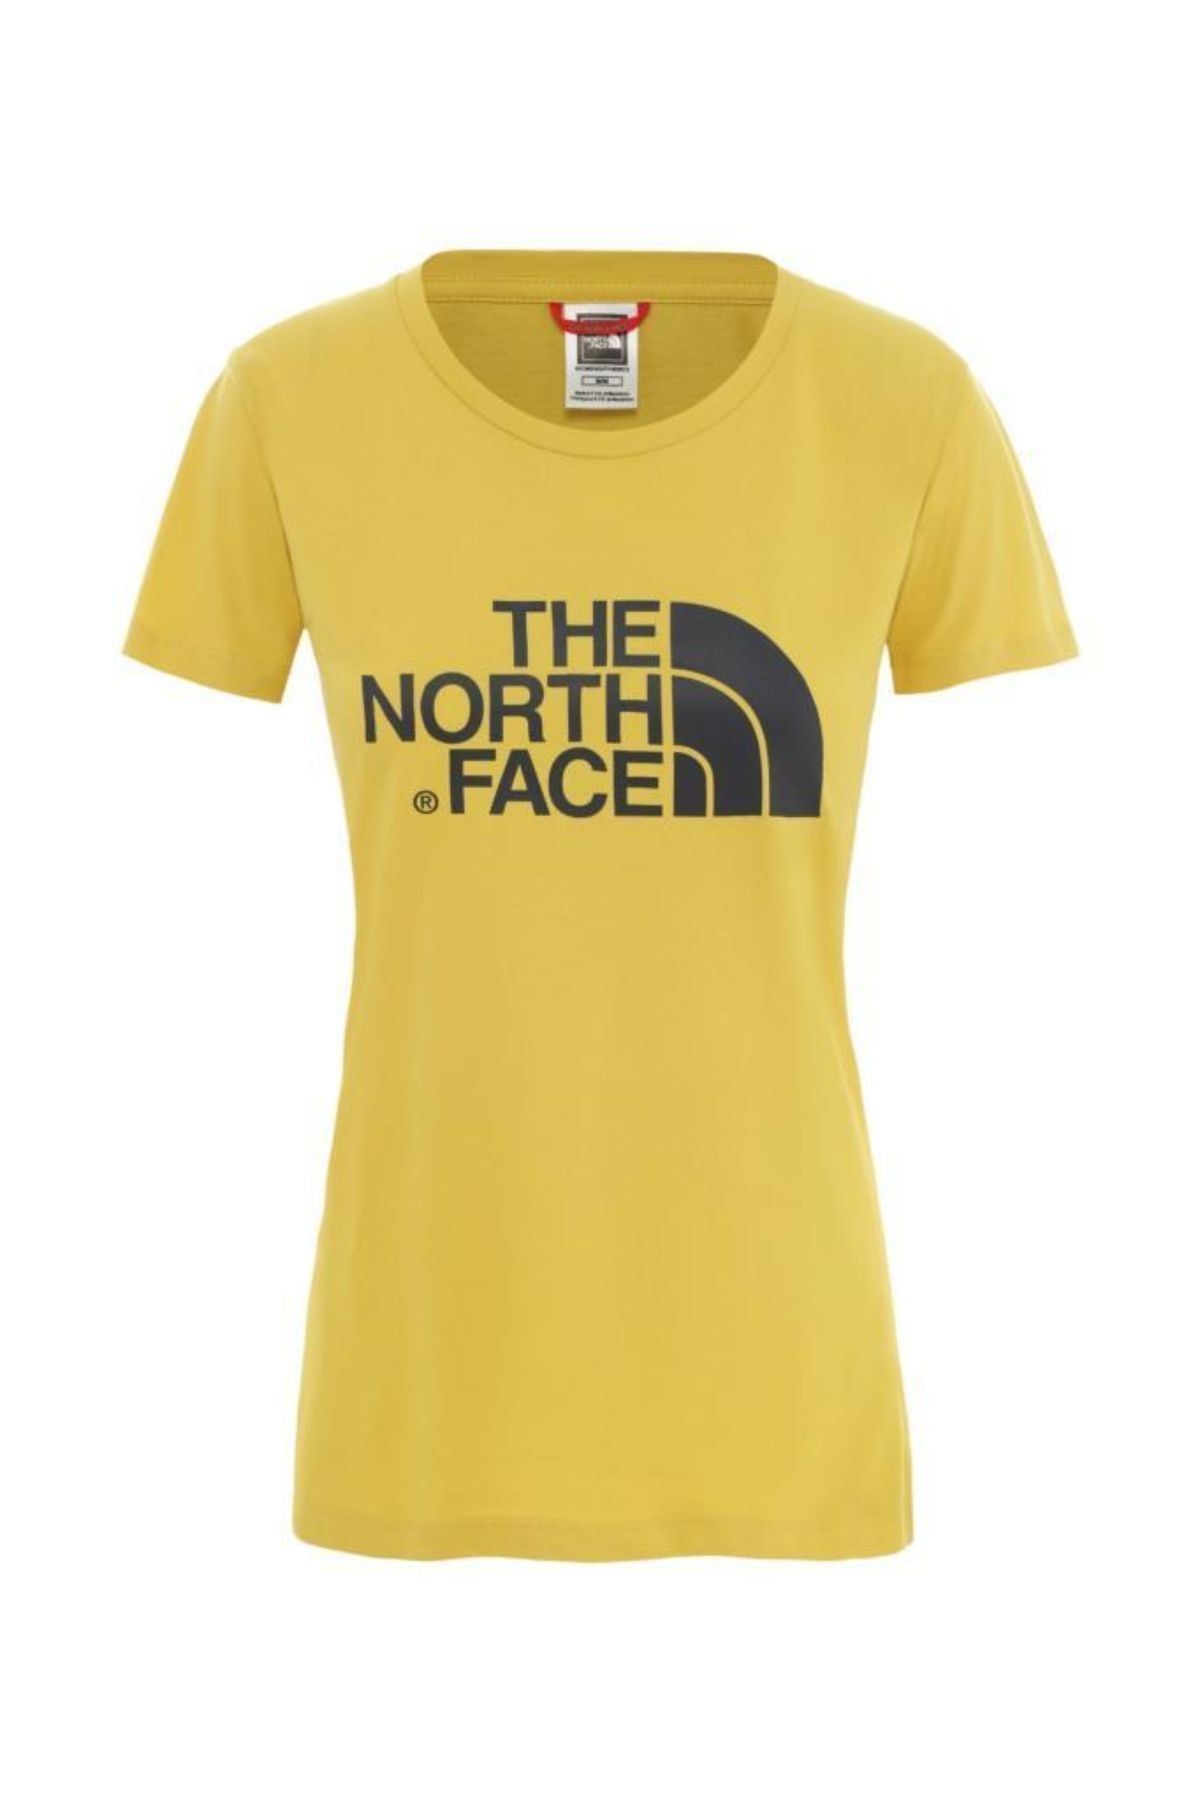 The North Face The North Face Easy Kadın T-Shirt Sarı